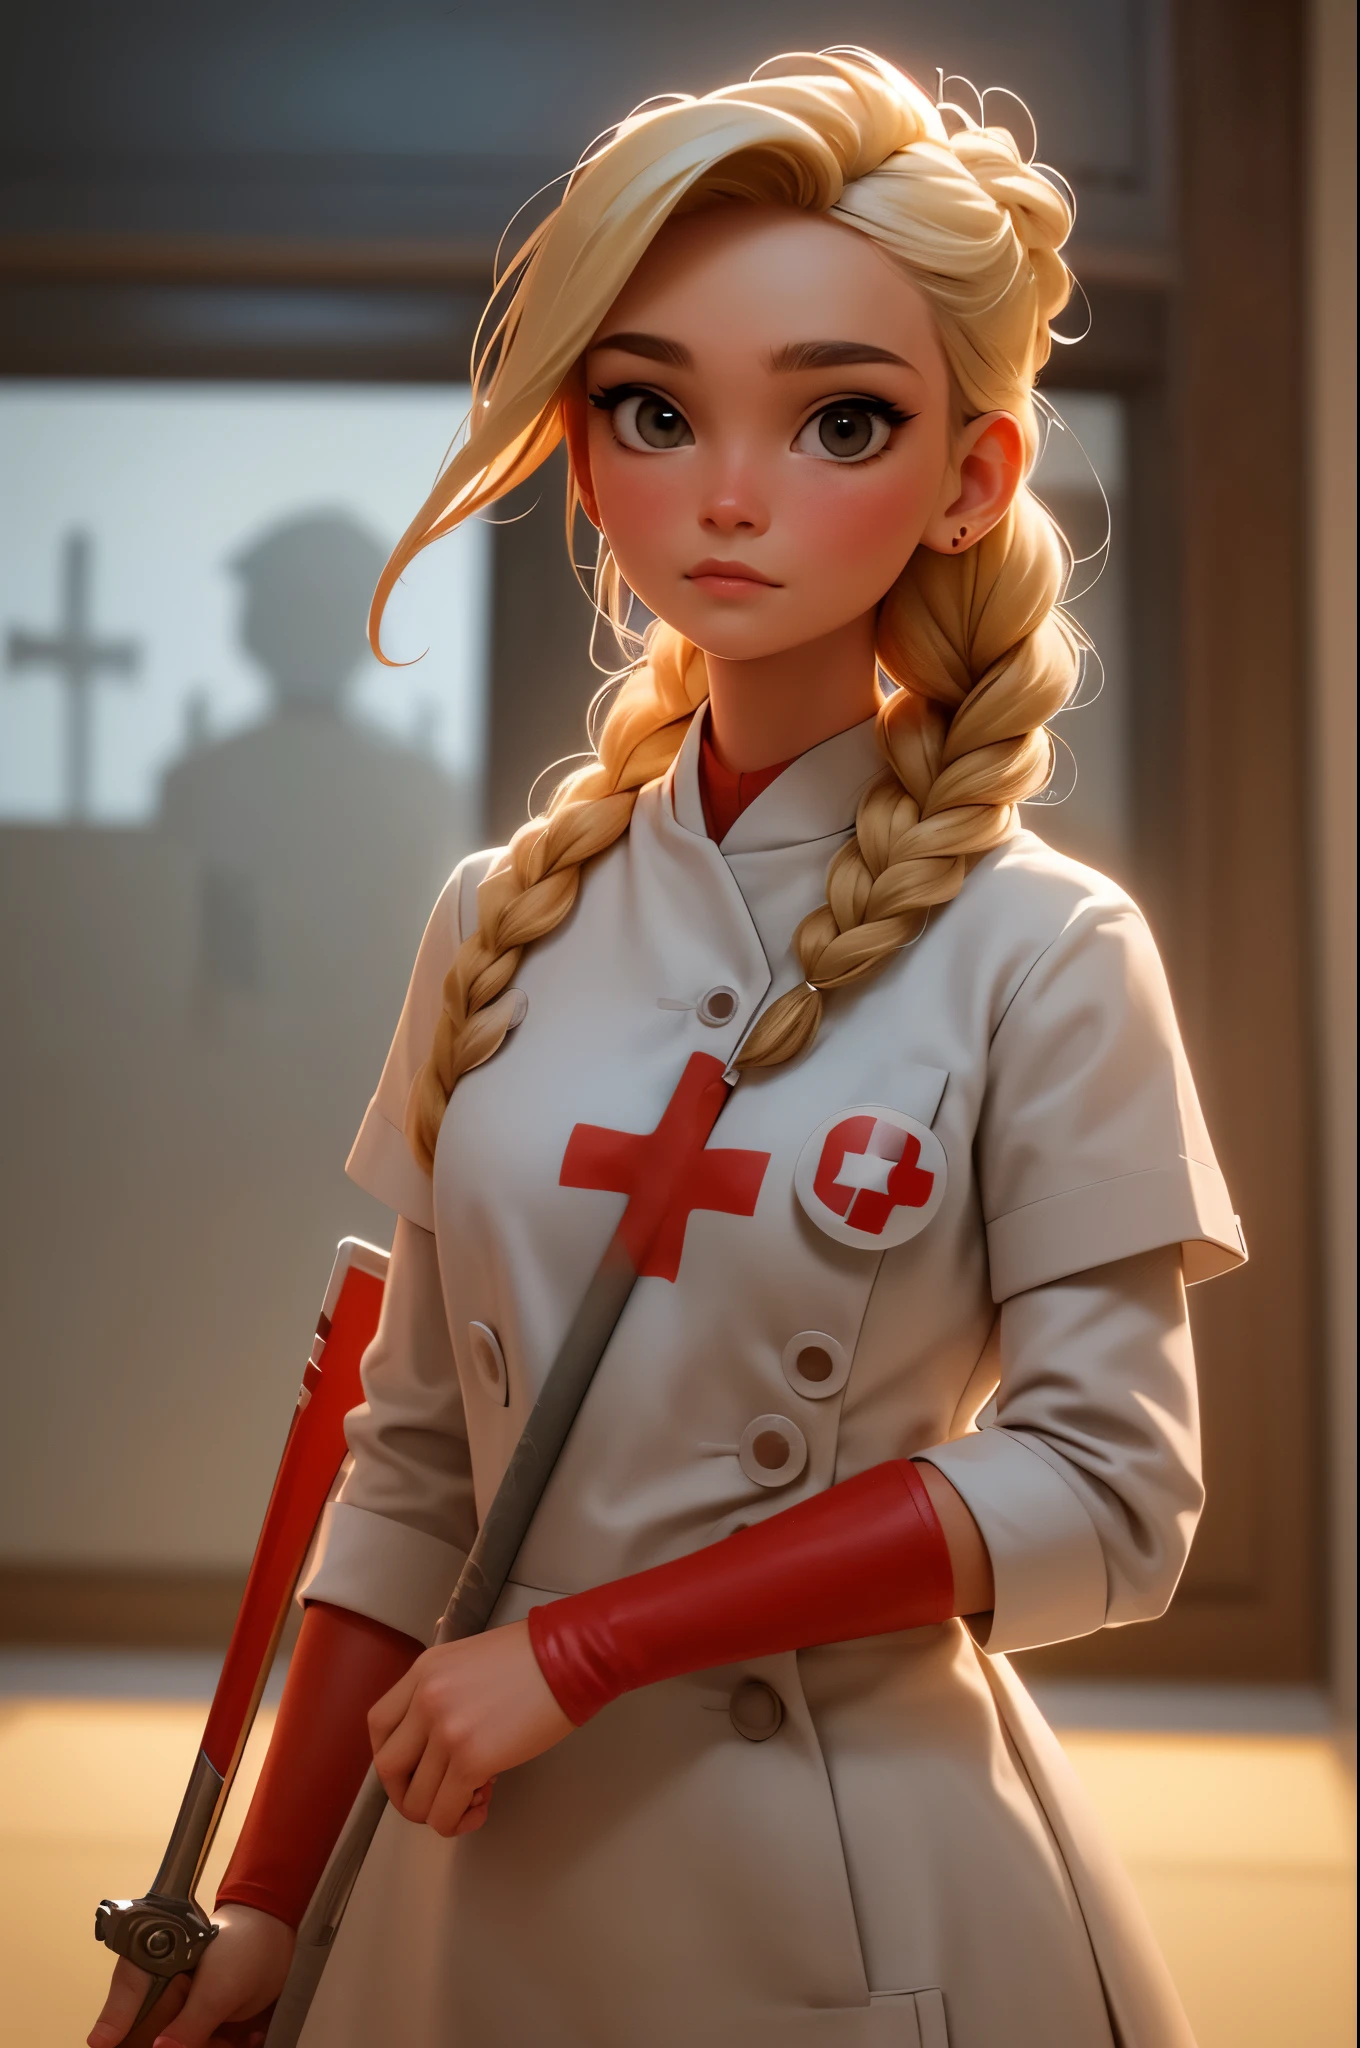 1個女孩, 金髮辮子, Warrior 護士 with sword on the battlefield, 穿著帶有紅十字符號的光面白色皮革, 護士.